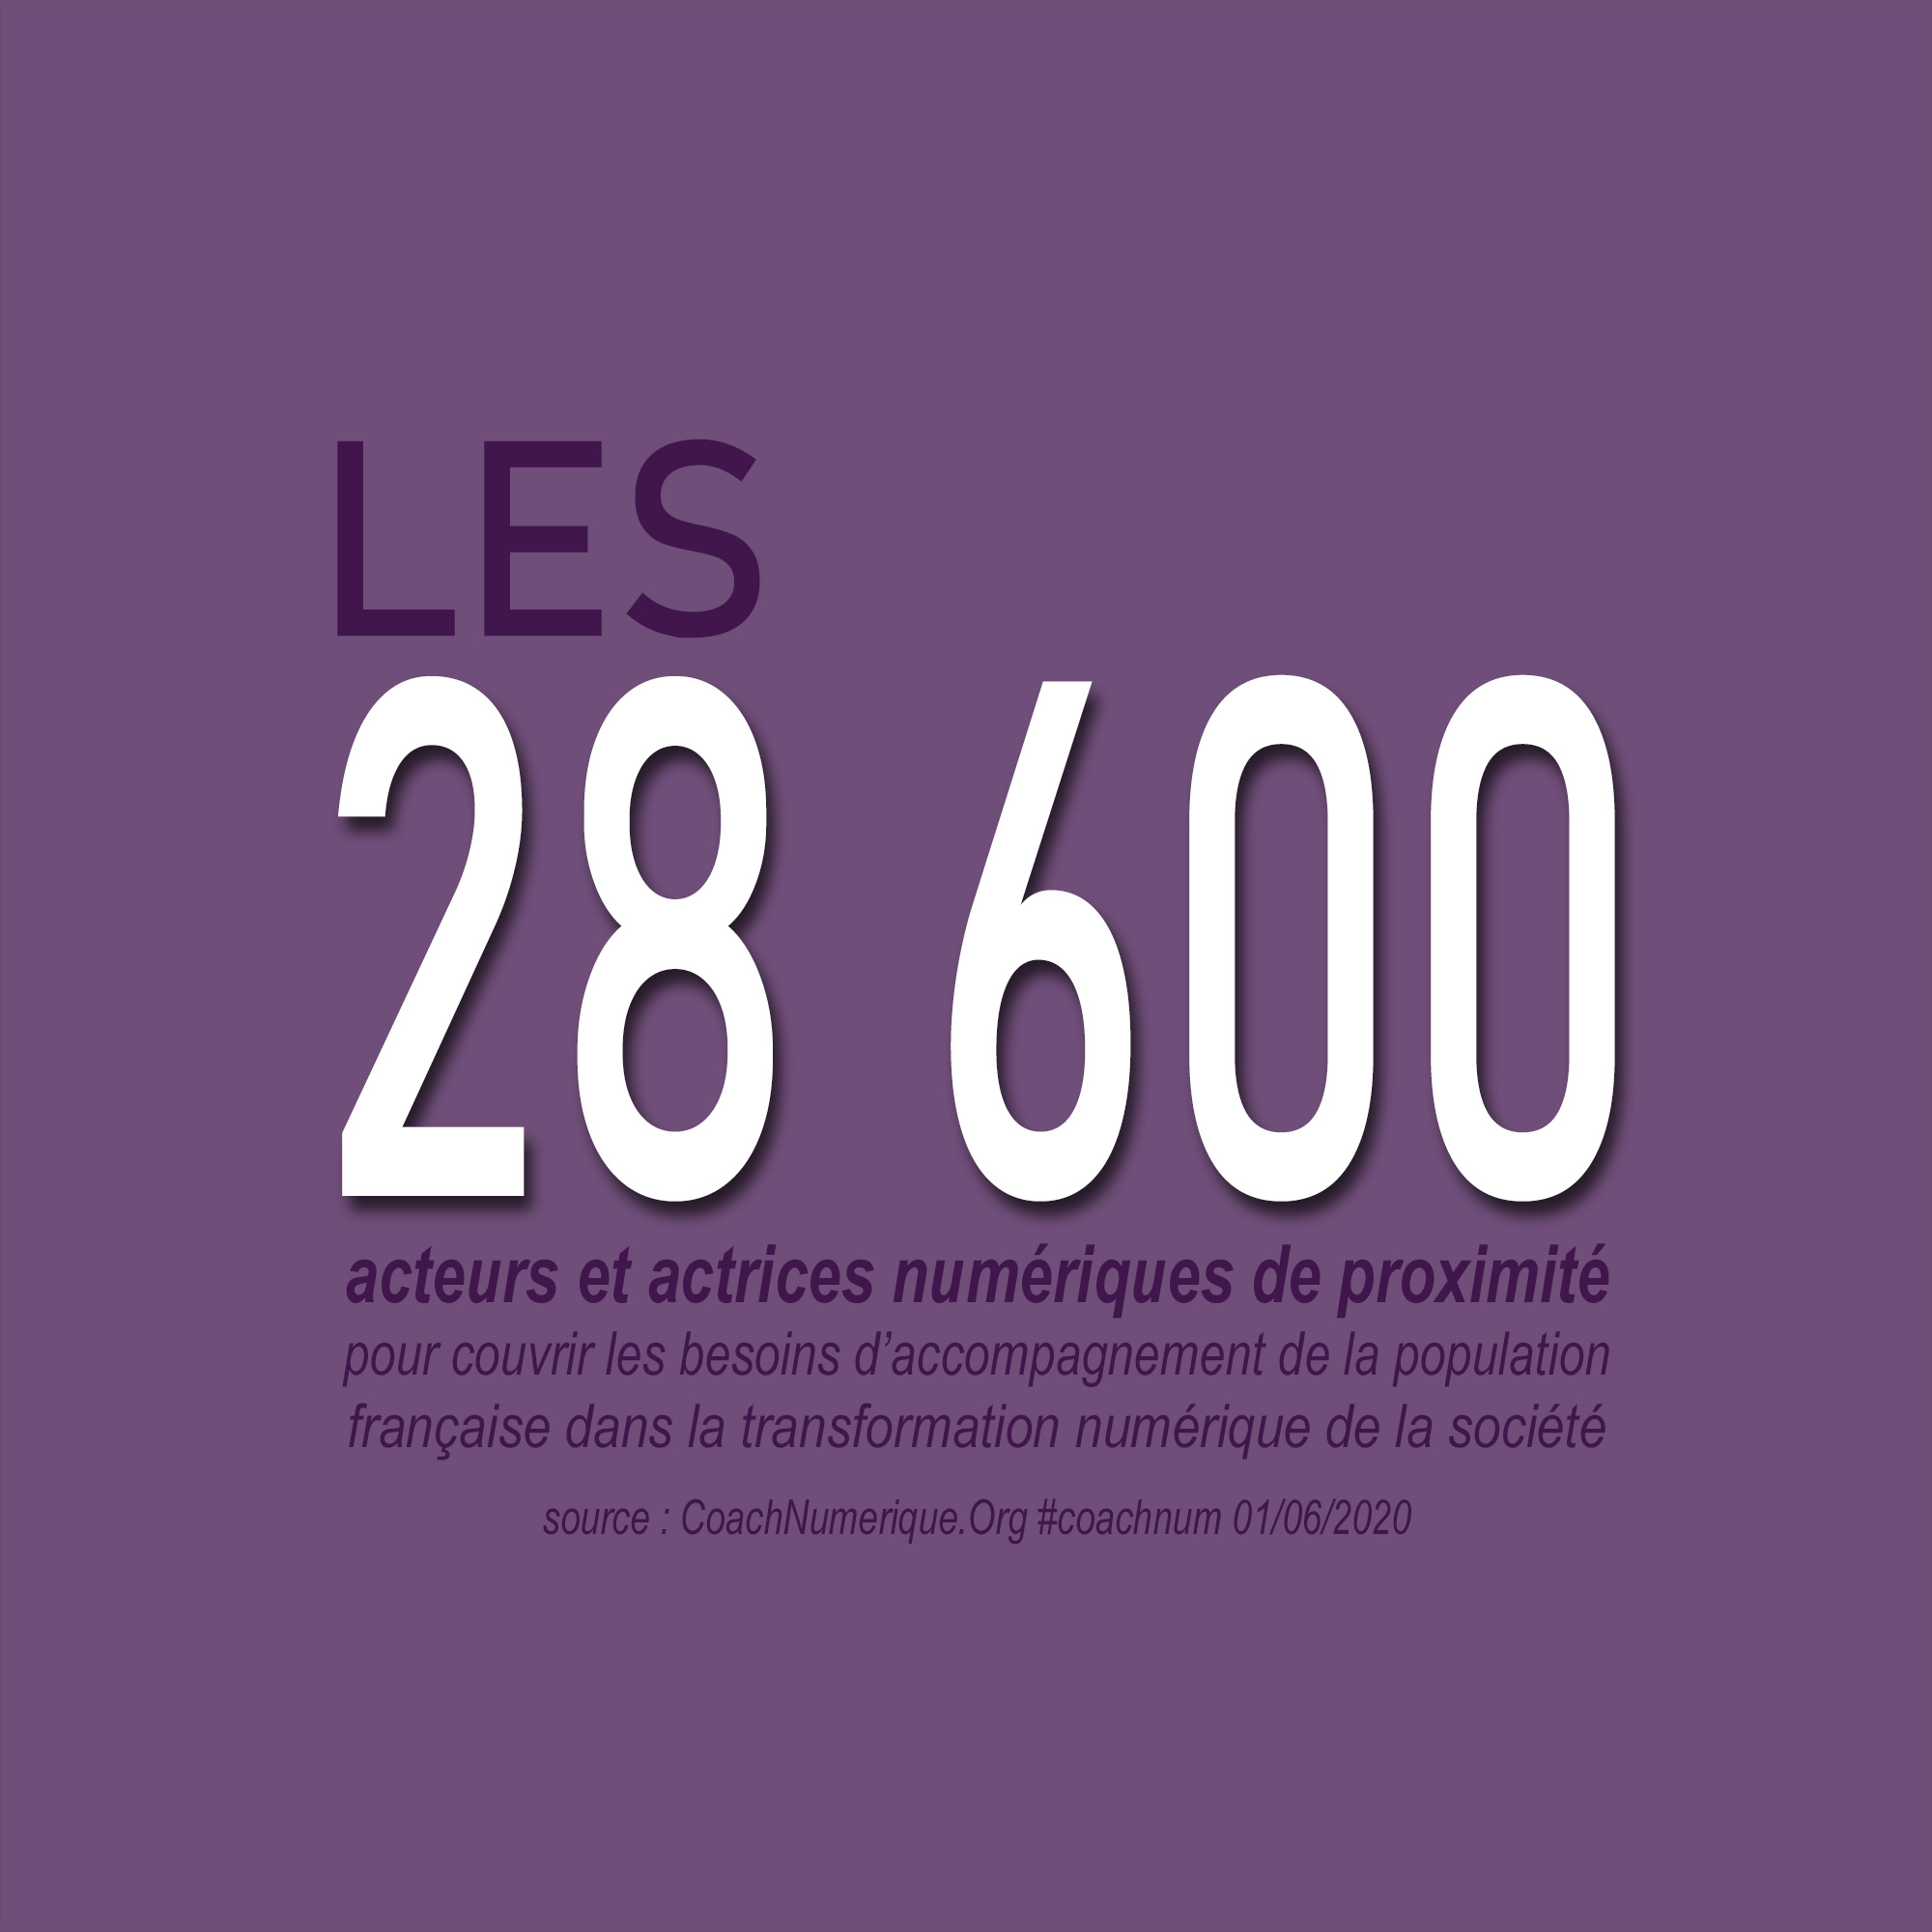 LES 28 600 acteurs et actrices numériques de proximité pour couvrir les besoins d’accompagnement de la population française dans la transformation numérique de la société CoachNum Coach Num Numerique